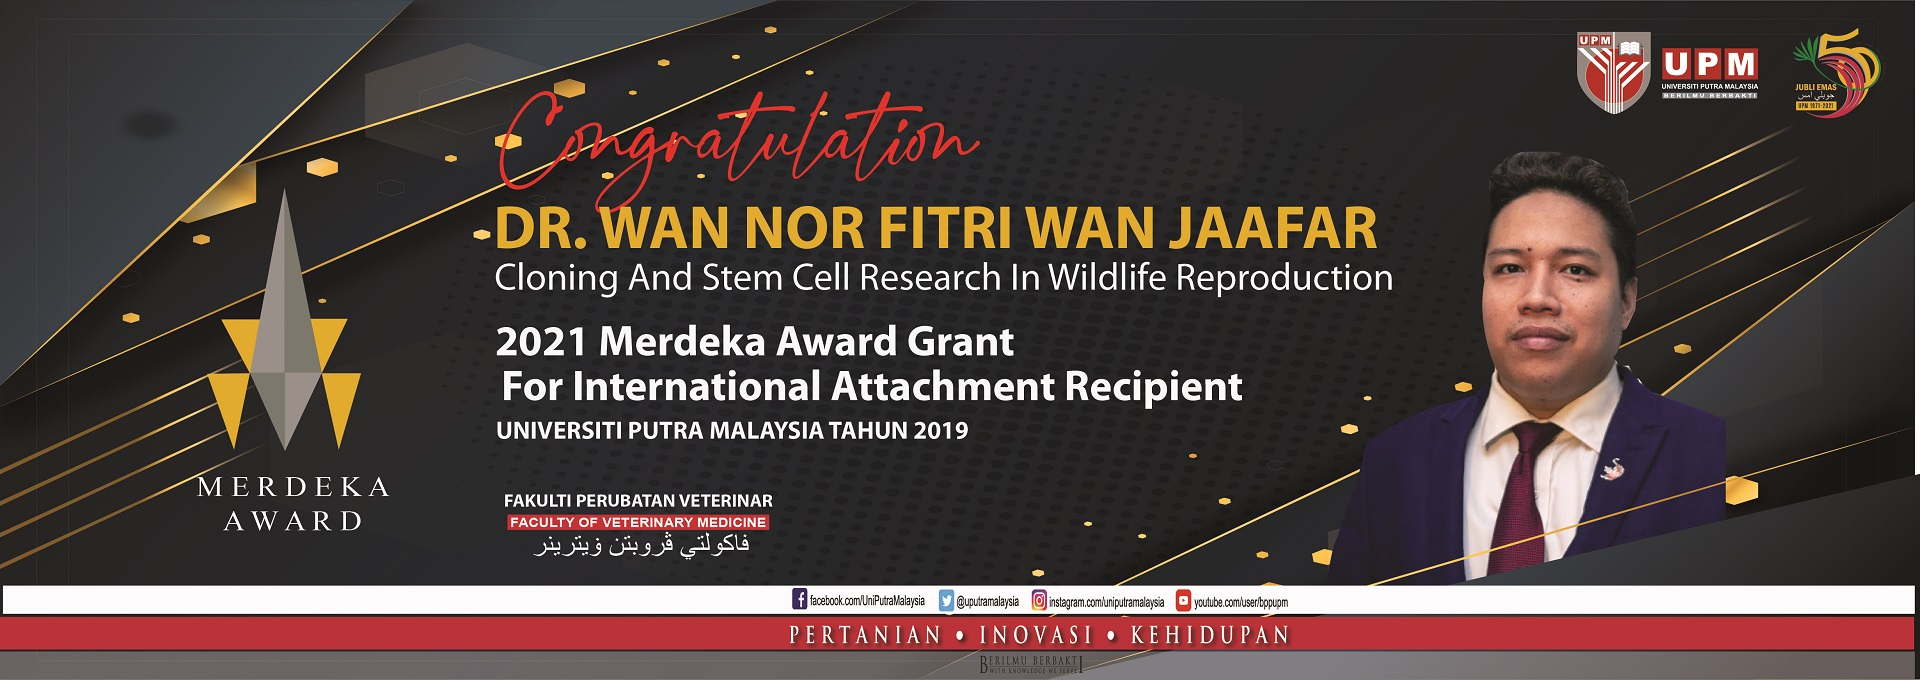 Merdeka Award Grant 2021